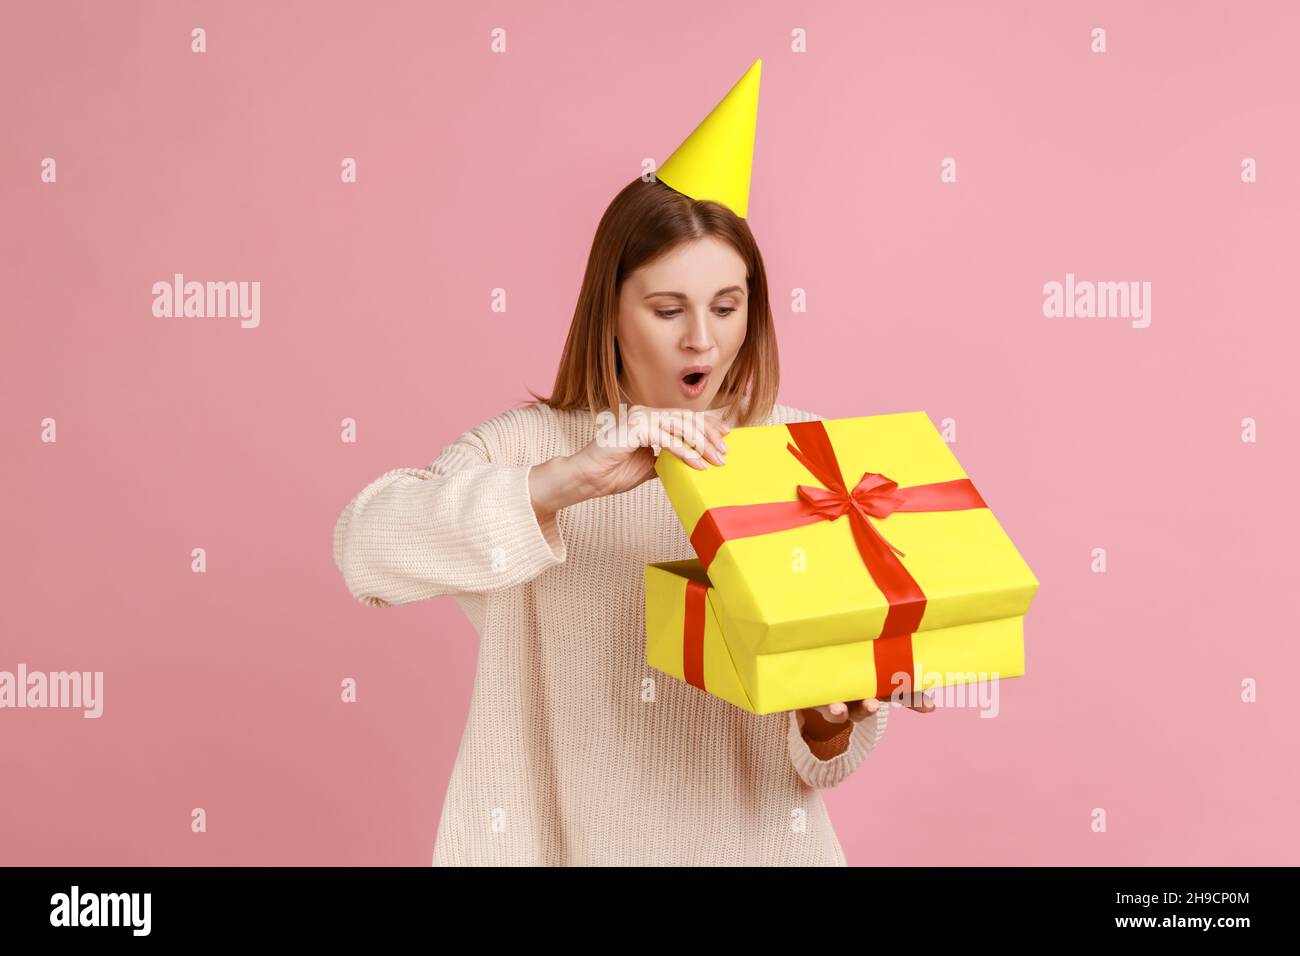 Porträt der aufgeregt erstaunt blonde Frau in Partei-Kegel Auspacken Geschenk-Box, mit angenehmer Überraschung, schockiert, trägt weißen Pullover. Innenaufnahme des Studios isoliert auf rosa Hintergrund. Stockfoto